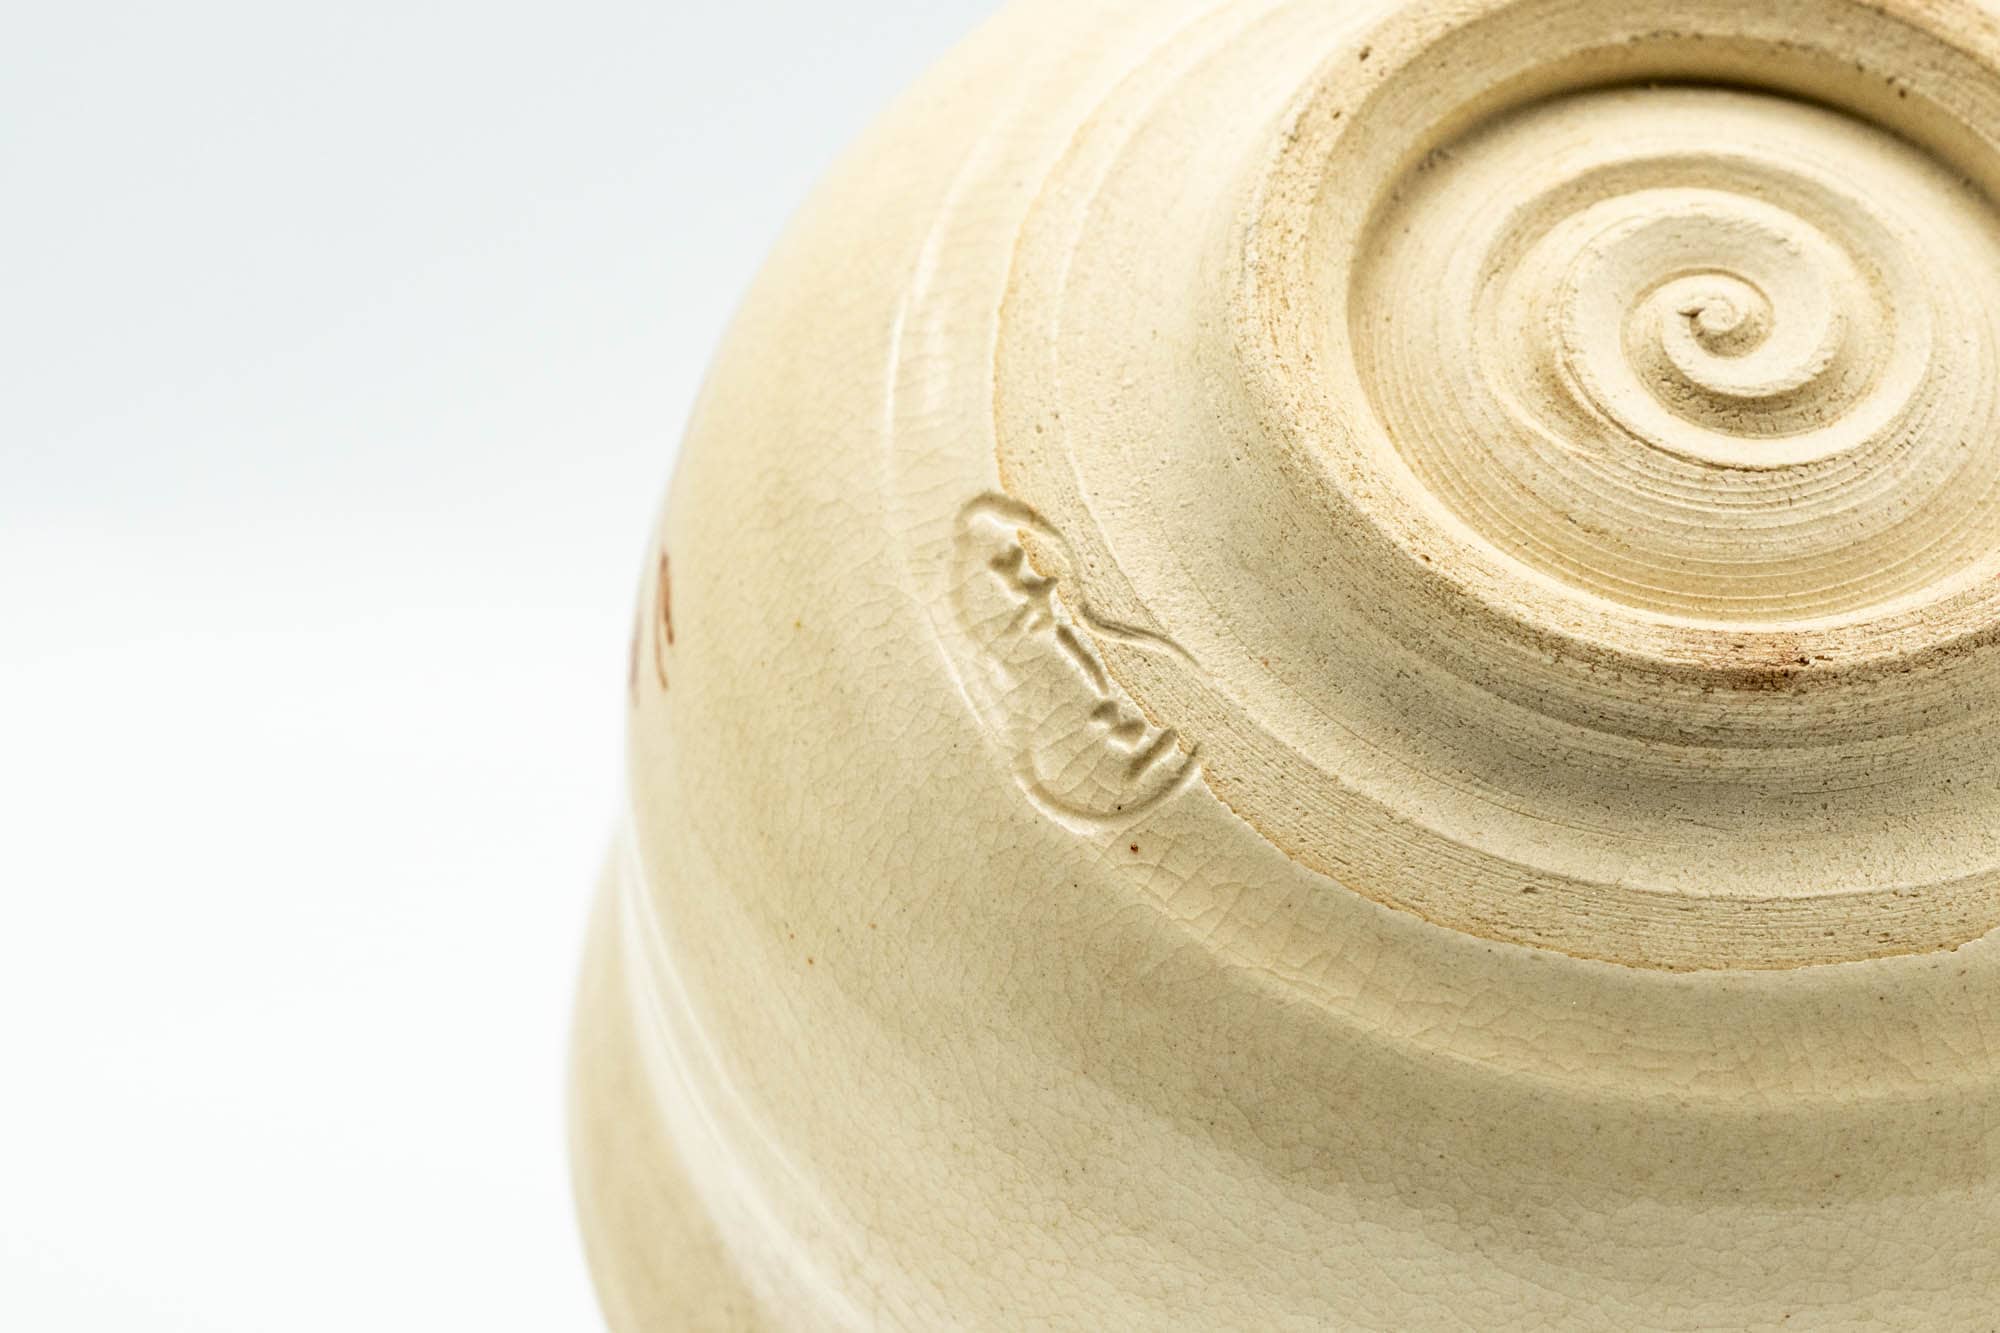 Japanese Matcha Bowl - Small Beige Glazed Otafuku Kanji Decorated Chawan - 150ml